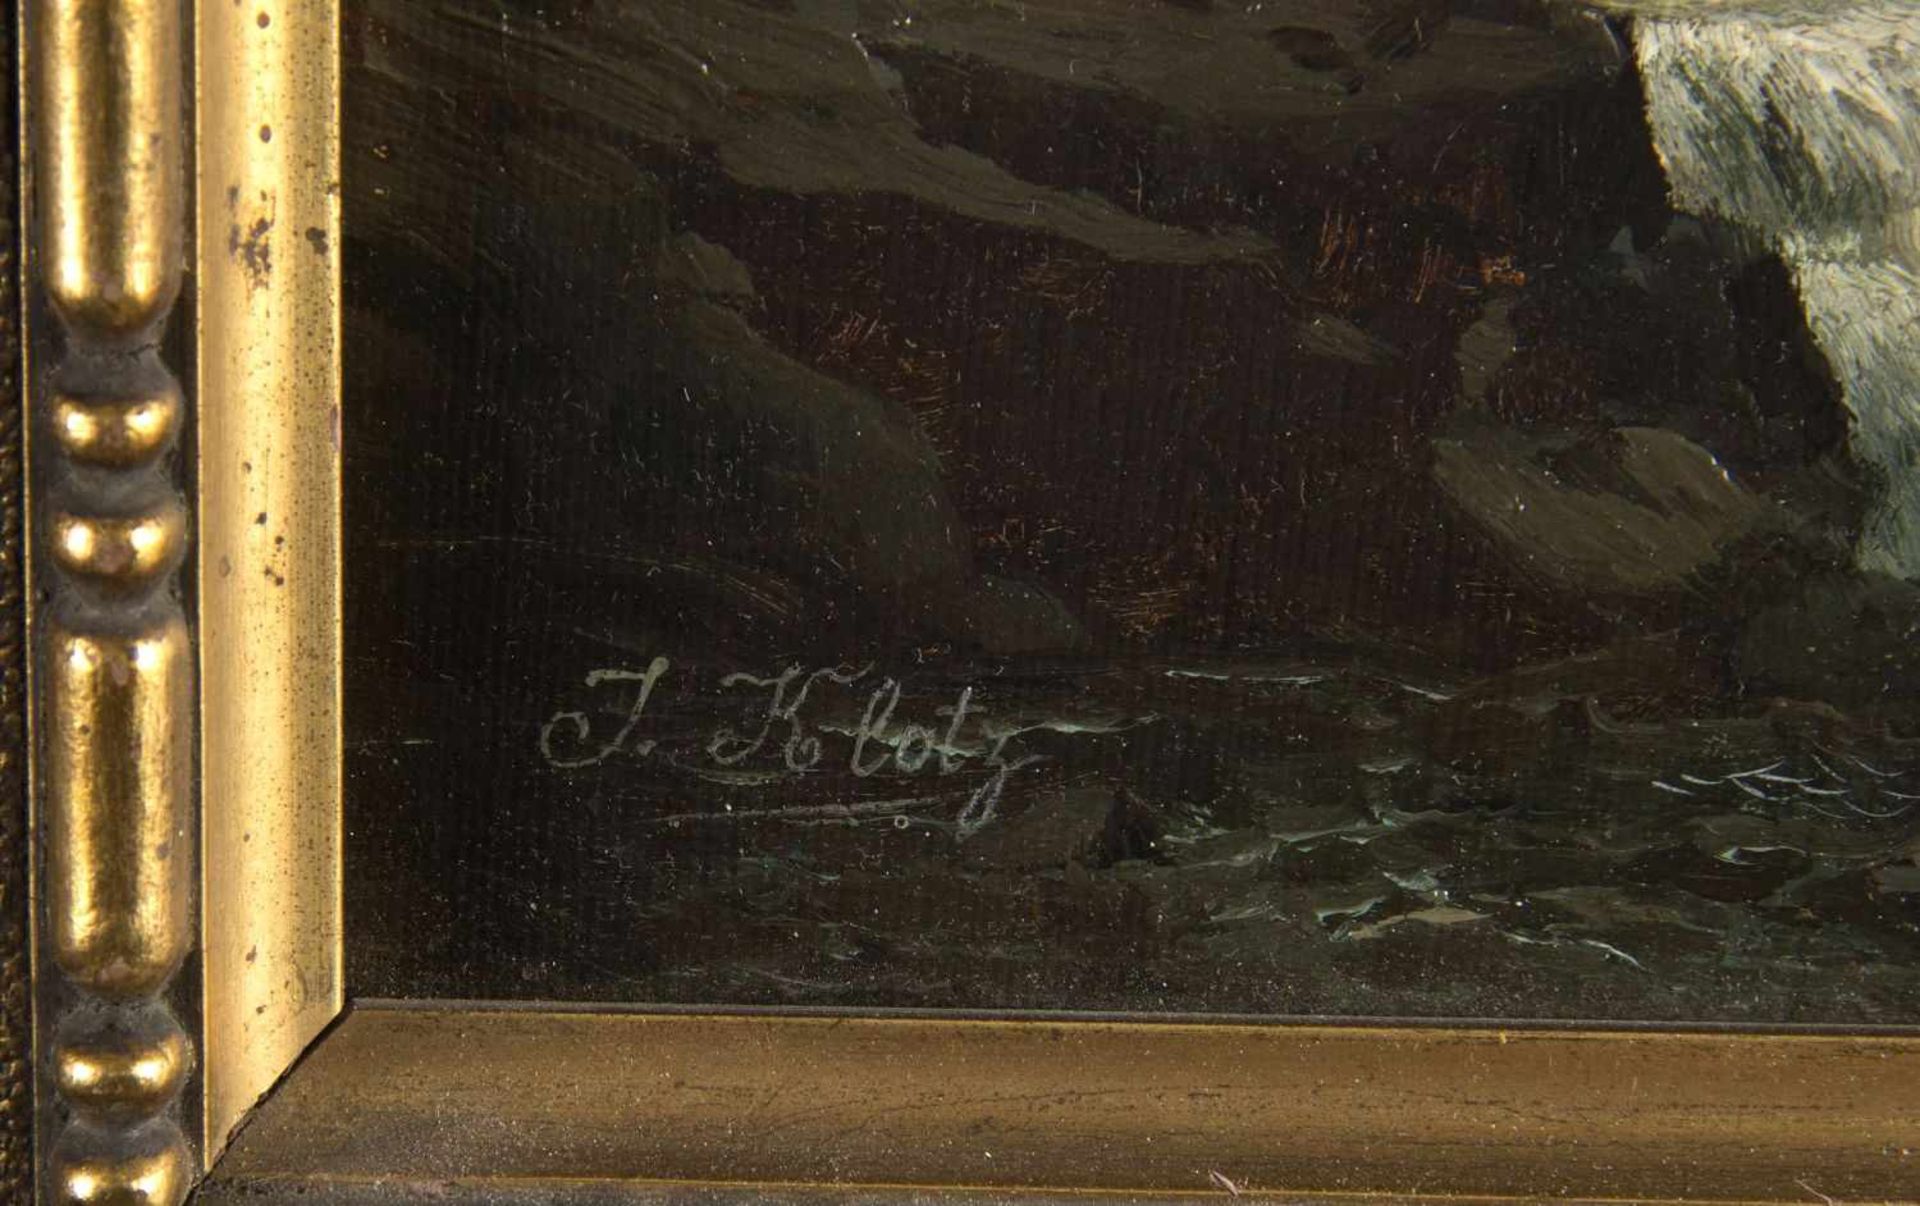 Klotz, J.Das Wetterhorn im Berner Oberland. Öl/Lwd. Sign. 29,5 x 44,5 cm. Gerahmt. Verso von fremder - Bild 2 aus 3